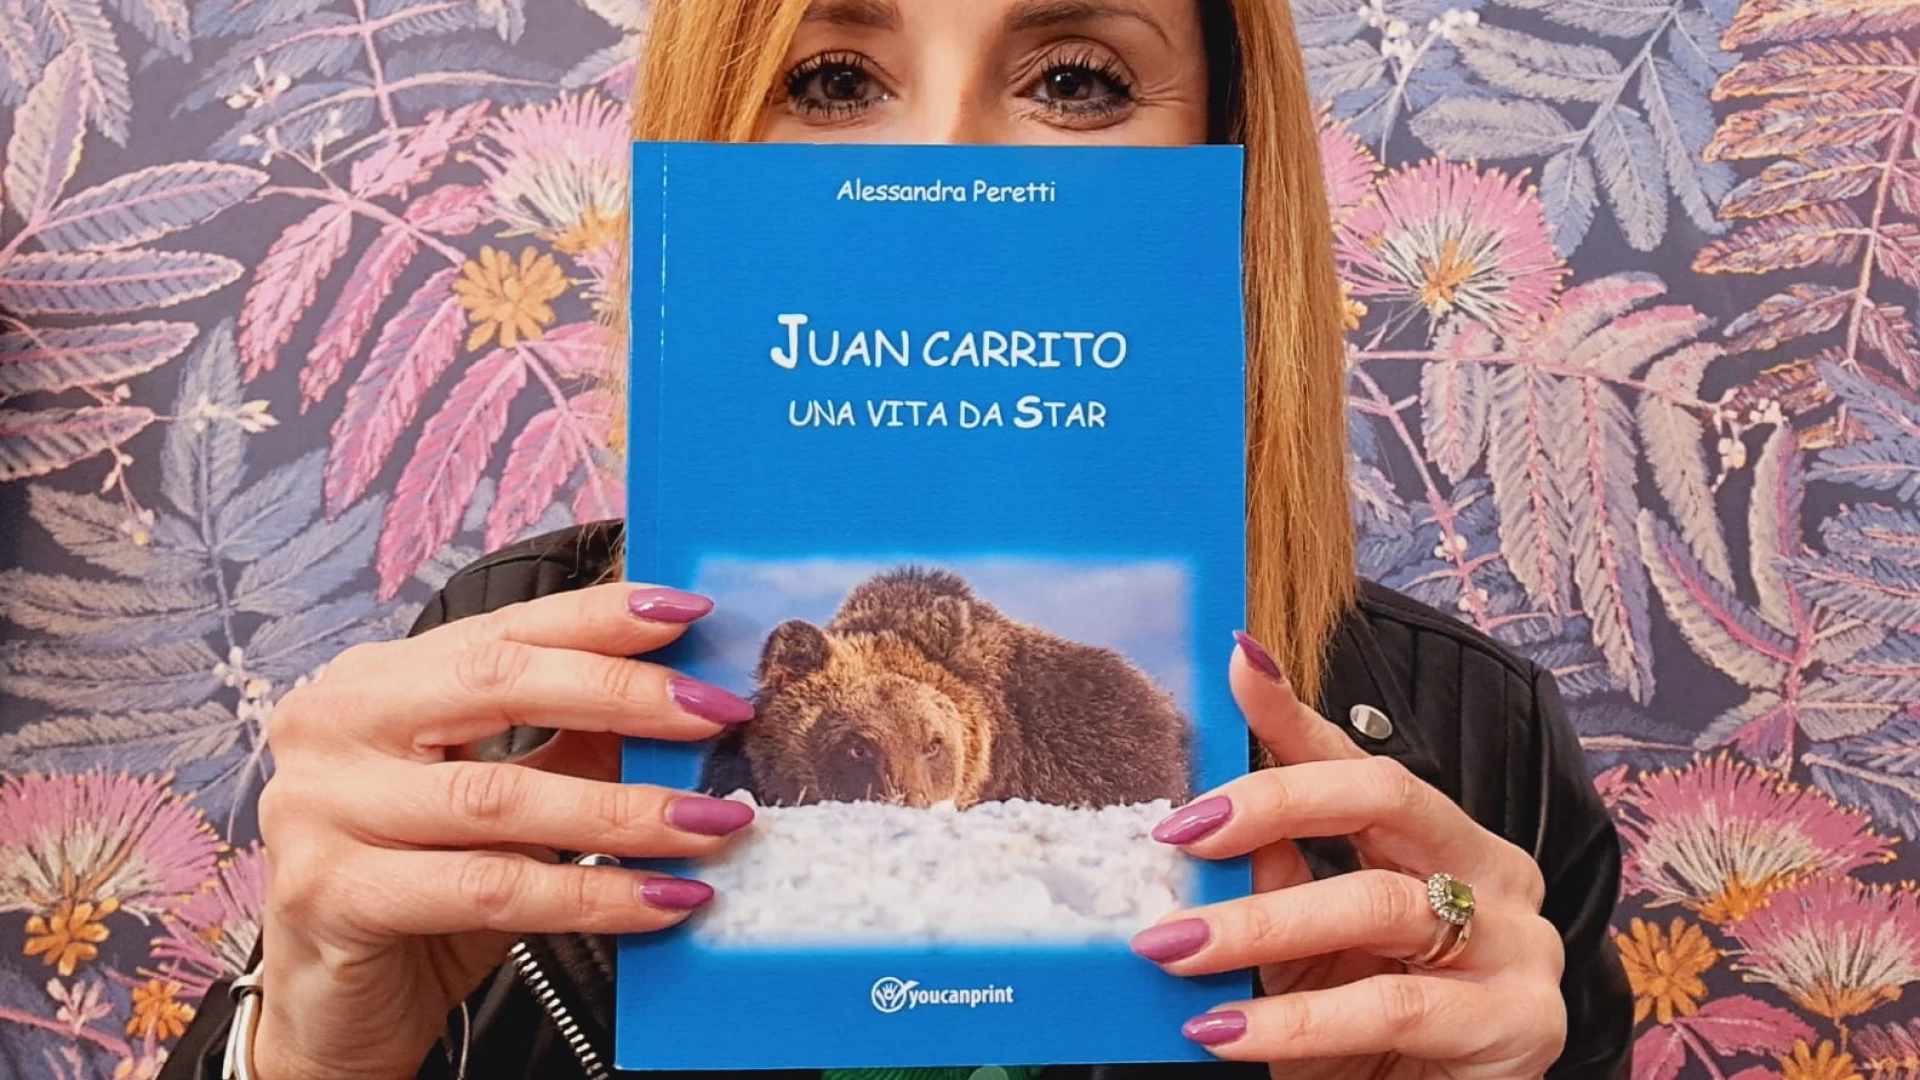 Castel Di Sangro: giovedì 6 aprile la presentazione del libro di Alessandra Peretti dal titolo “Juan Carrito una vita da star”.